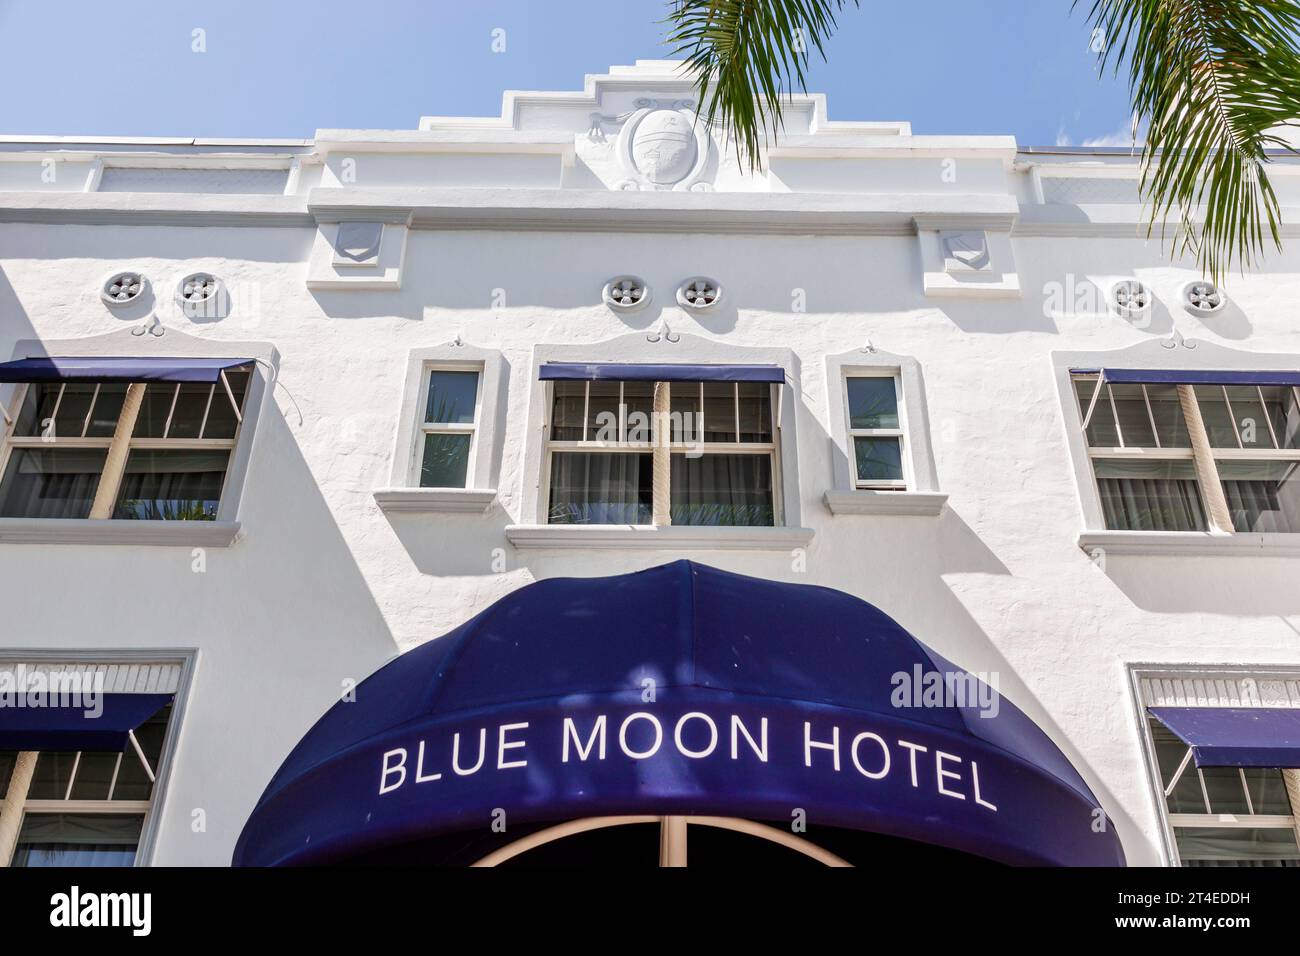 Miami Beach Florida, Außenansicht, Hotel vor dem Eingang des Gebäudes, Collins Avenue, Blue Moon Hotel Schild Markise, Hotels Motels Unternehmen Stockfoto